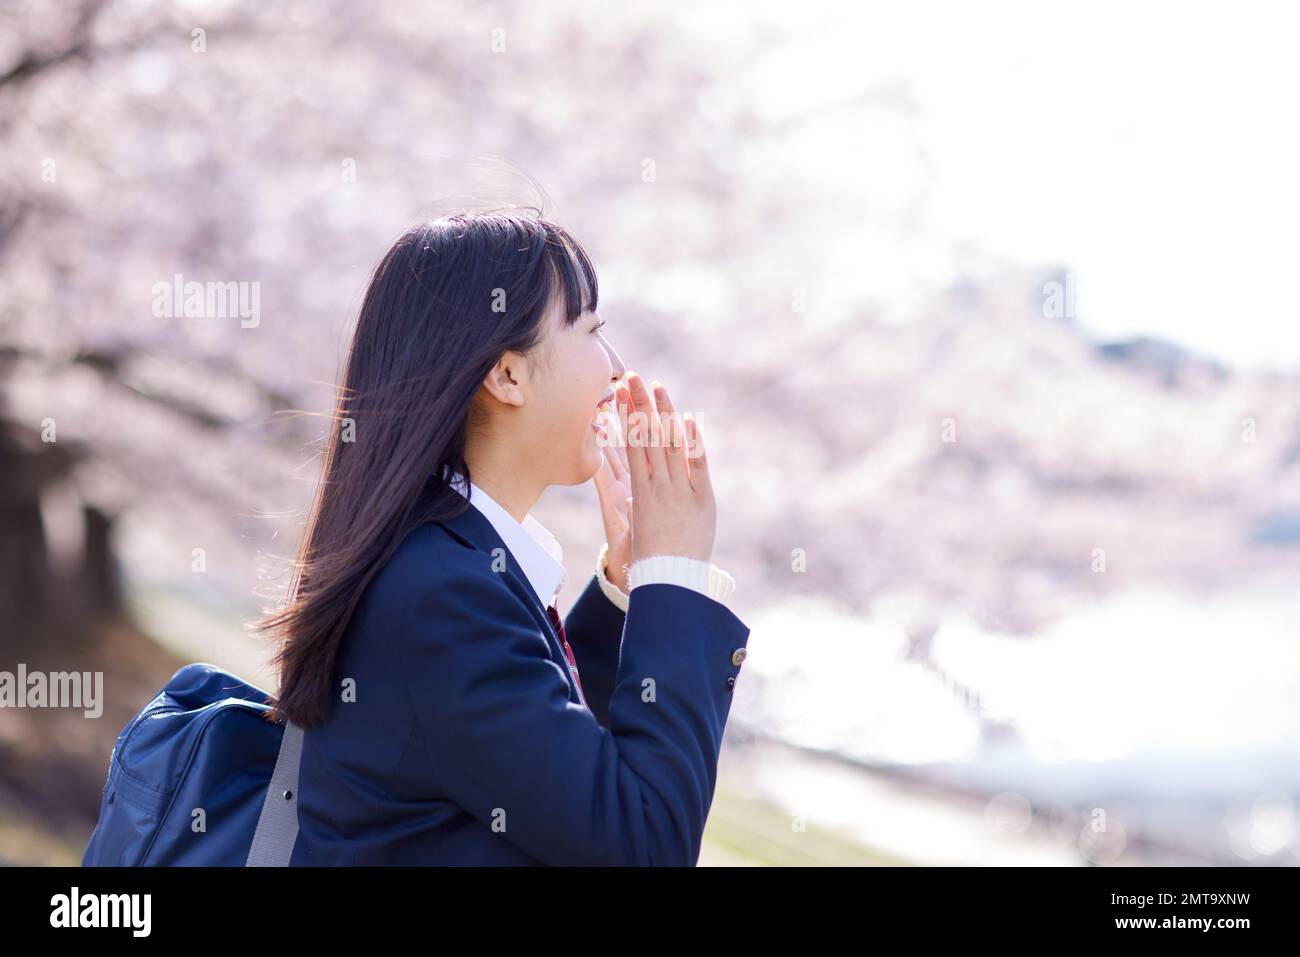 Ritratto degli studenti delle scuole superiori giapponesi con fiori di ciliegio in piena fioritura Foto Stock